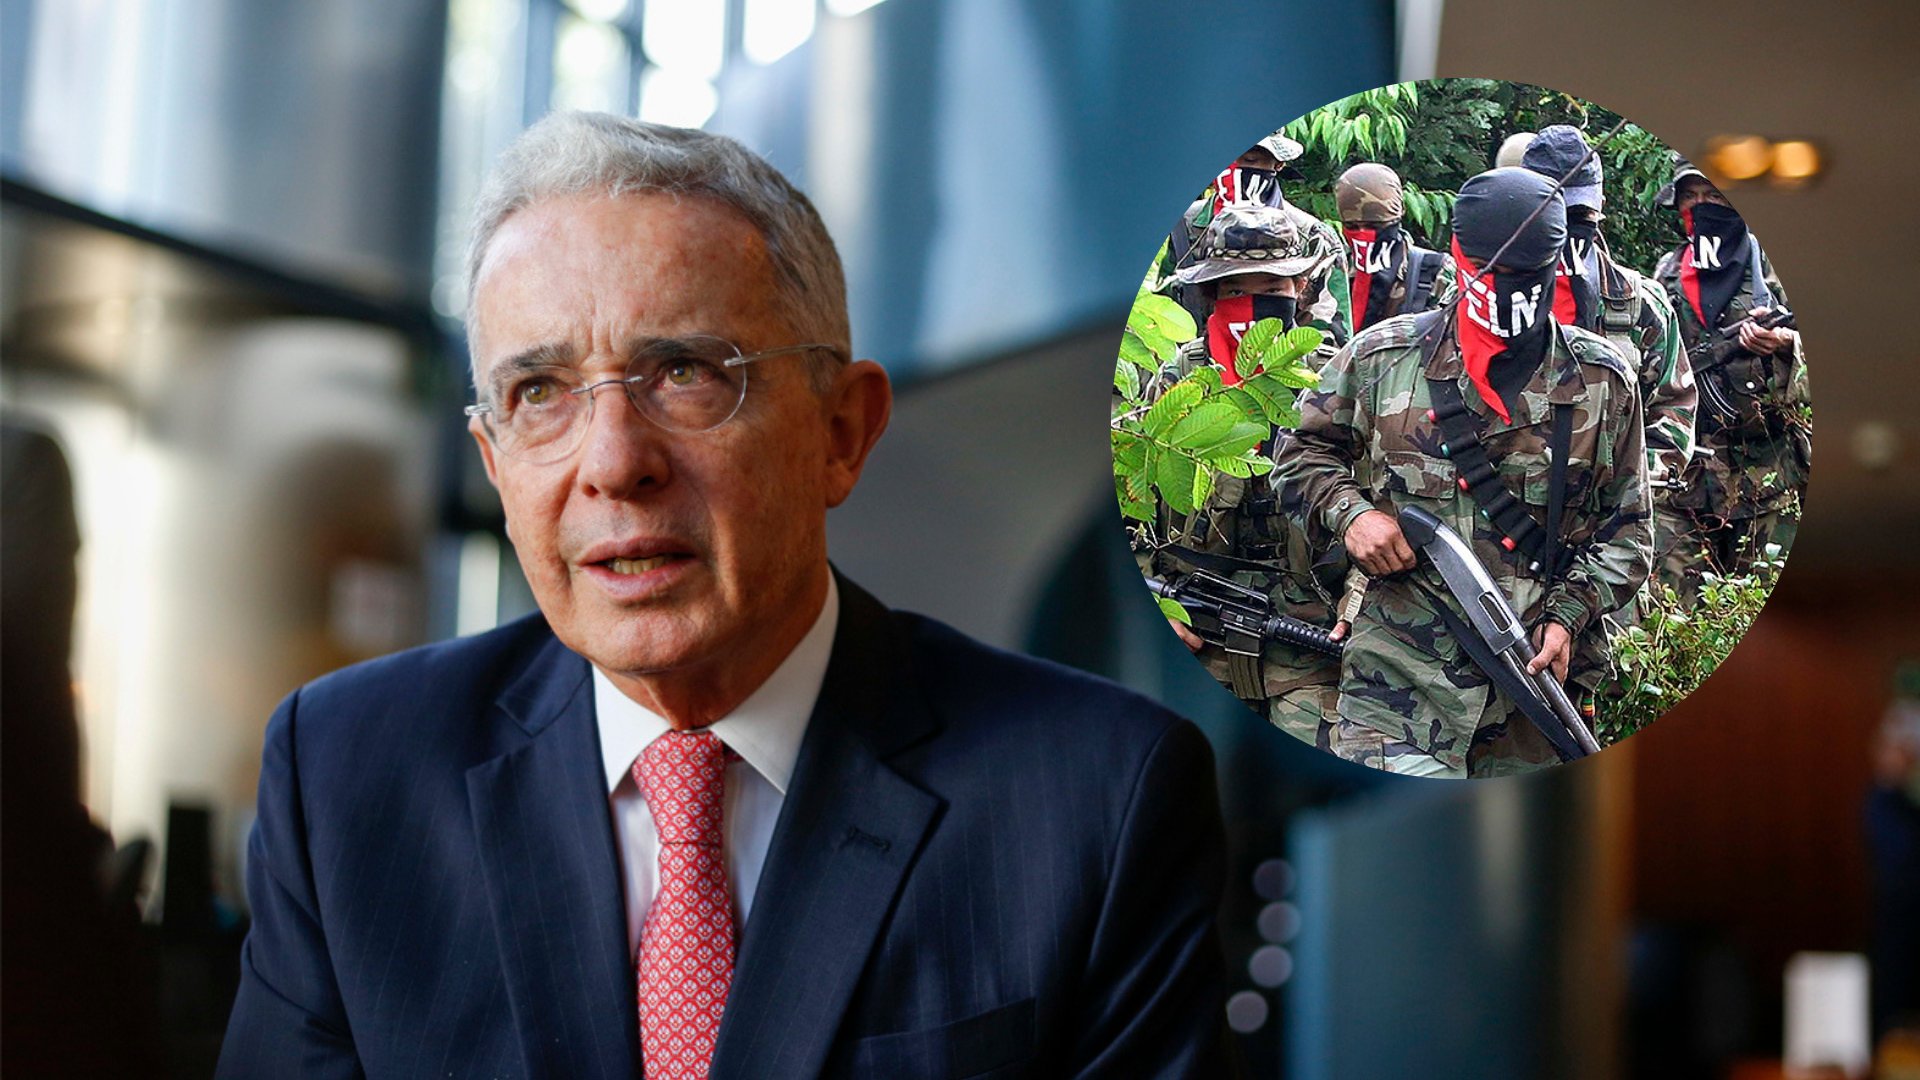 Uribe pede que Farc cessem violência para negociar acordo de paz